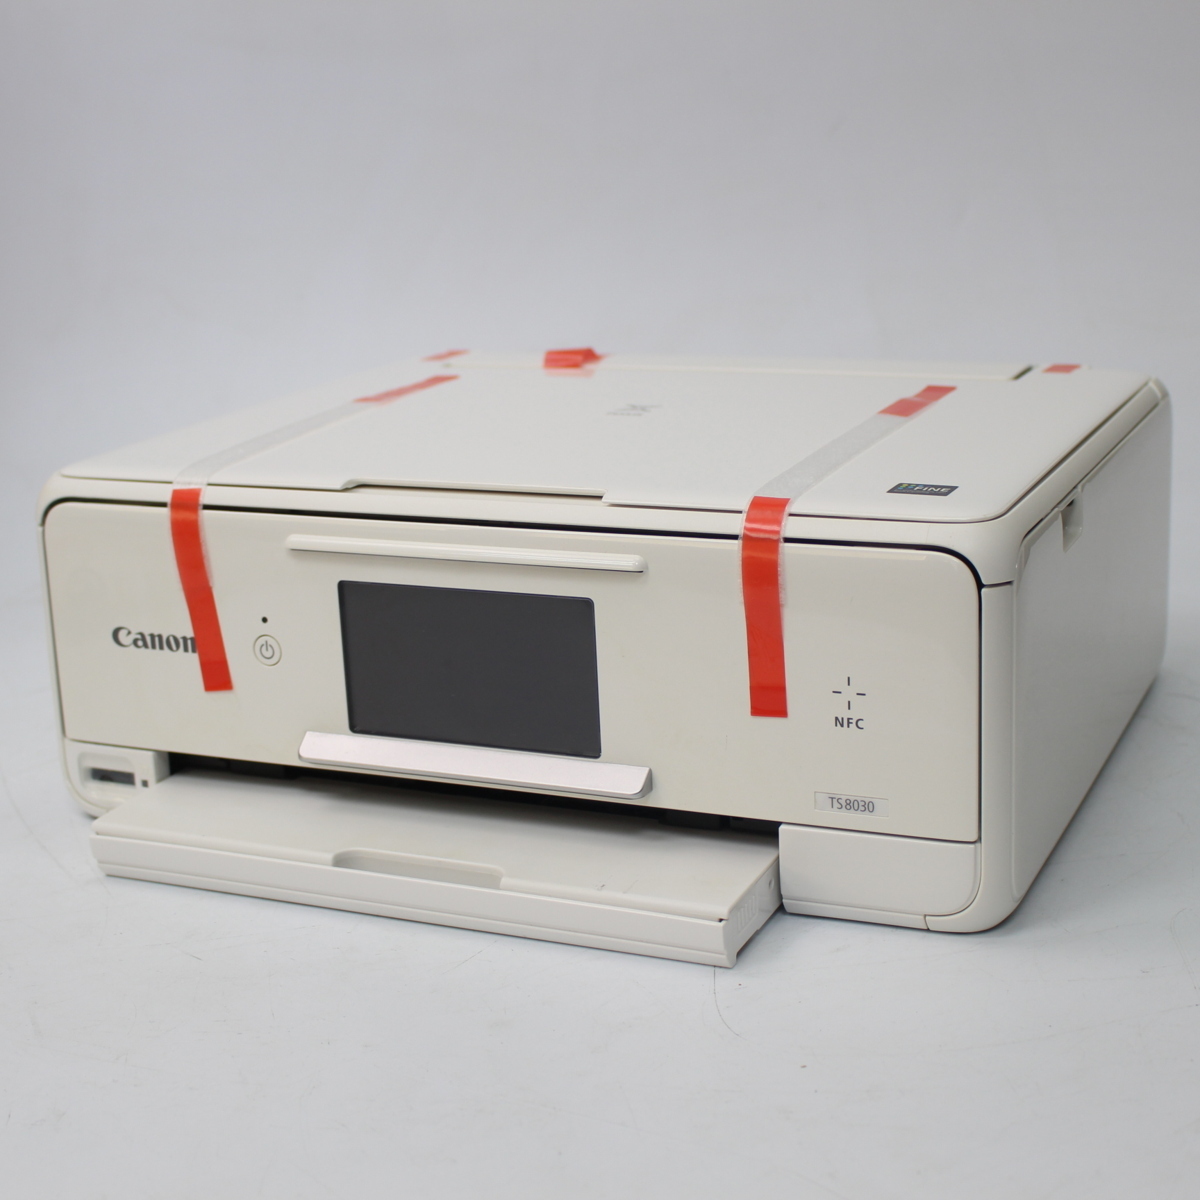 キャノン PIXUS TS8030 インクジェット複合機 ホワイト 液晶モニタ